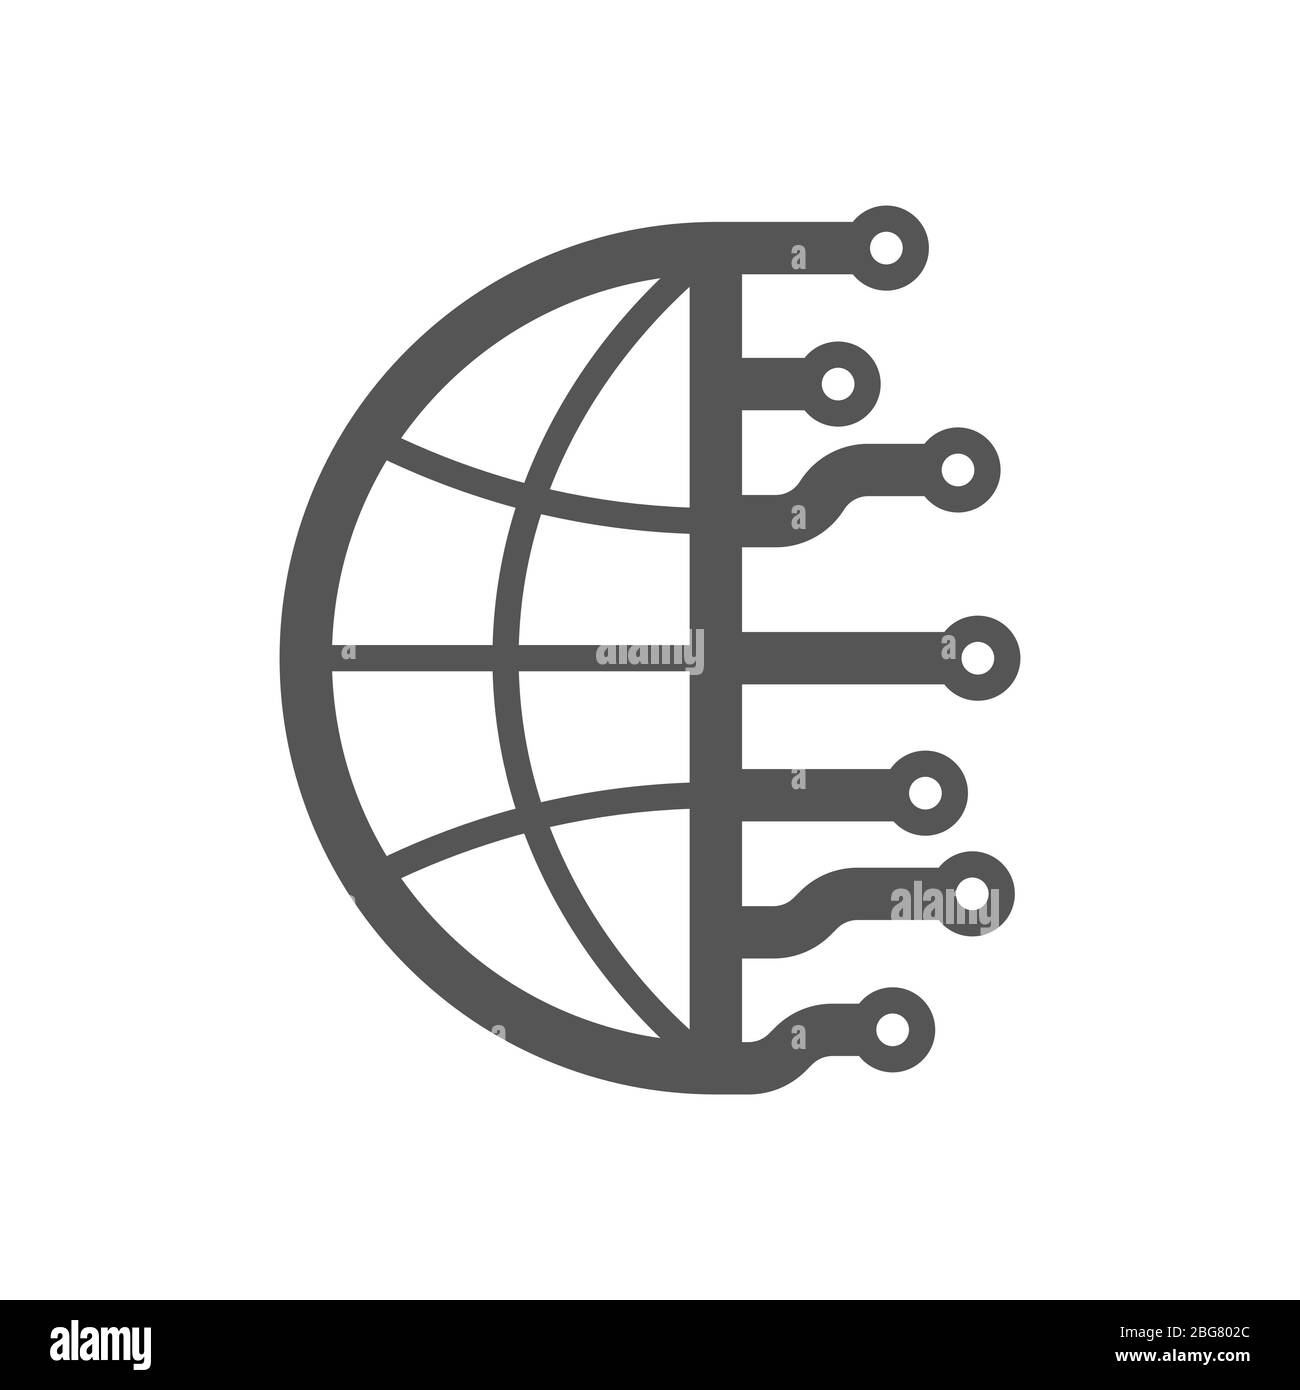 Concetto di Internet delle cose, IoT, IIoT e networking per dispositivi connessi. Digital Planet, concetto Industry 4.0. EPS 10 Illustrazione Vettoriale